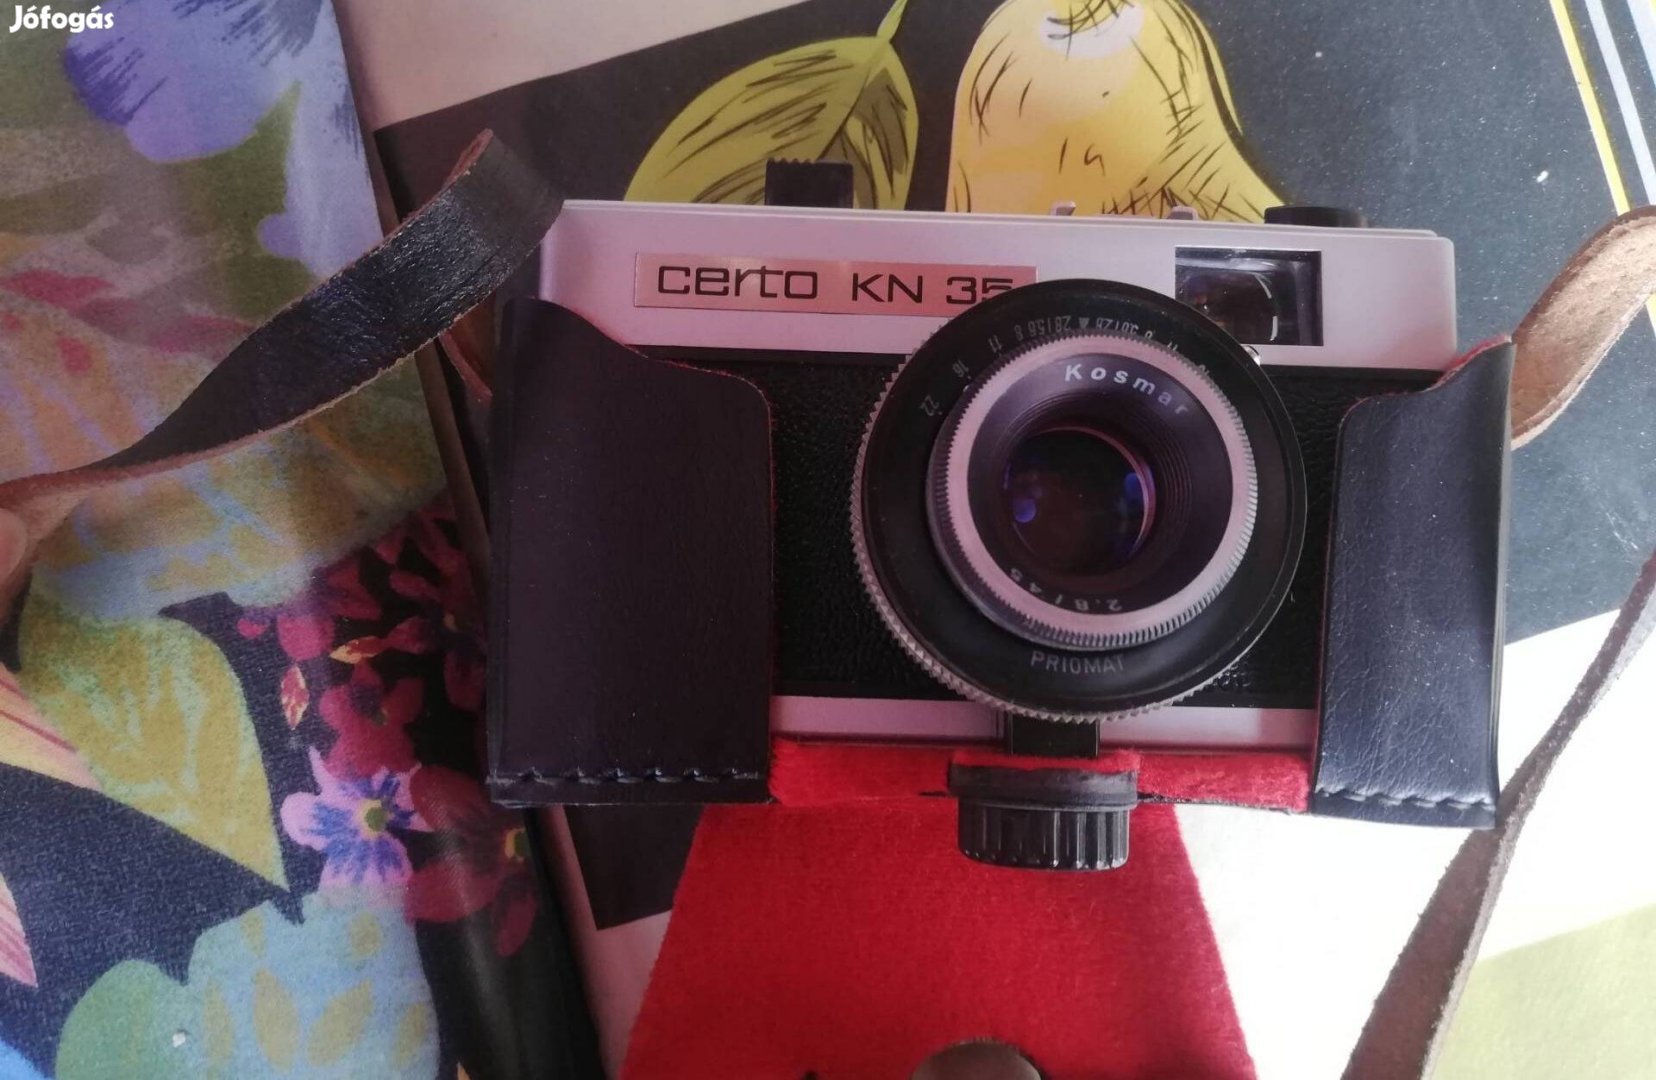 Certo kn35 fényképezőgép 3000 forintért eladó